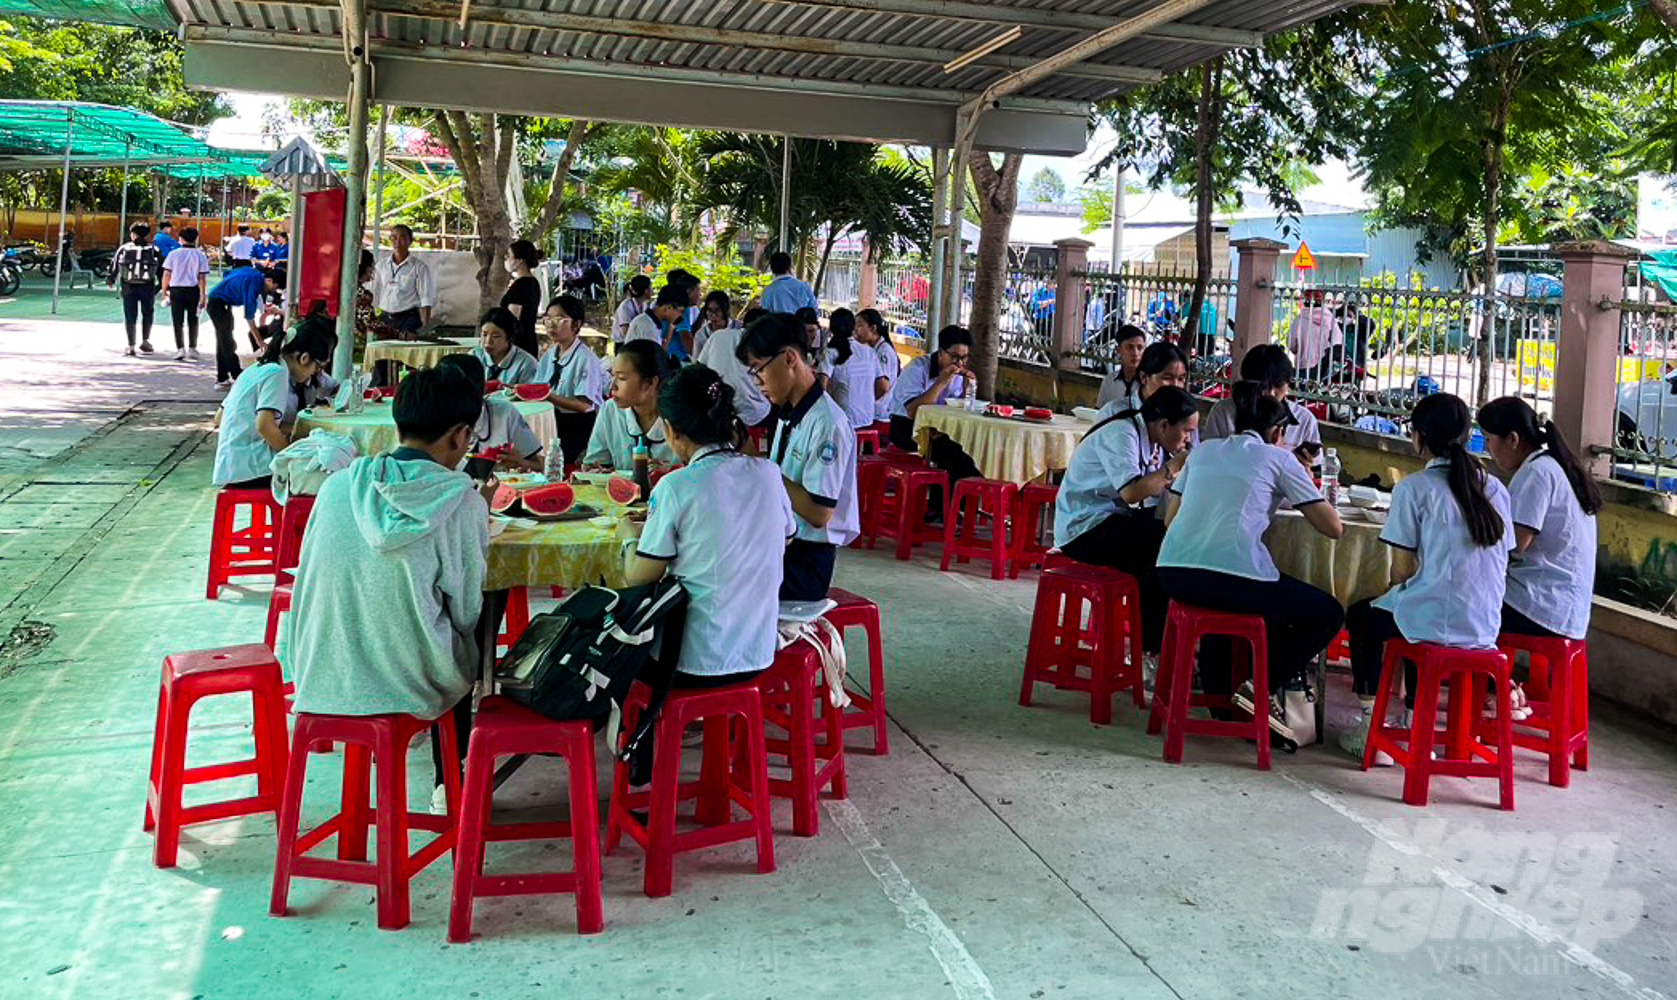 Tại điểm thi Trường THPT Phan Văn Trị, các thí sinh được bố trí điểm ăn trưa miễn phí ngay tại trường sau khi kết thúc buổi thi đầu tiên.